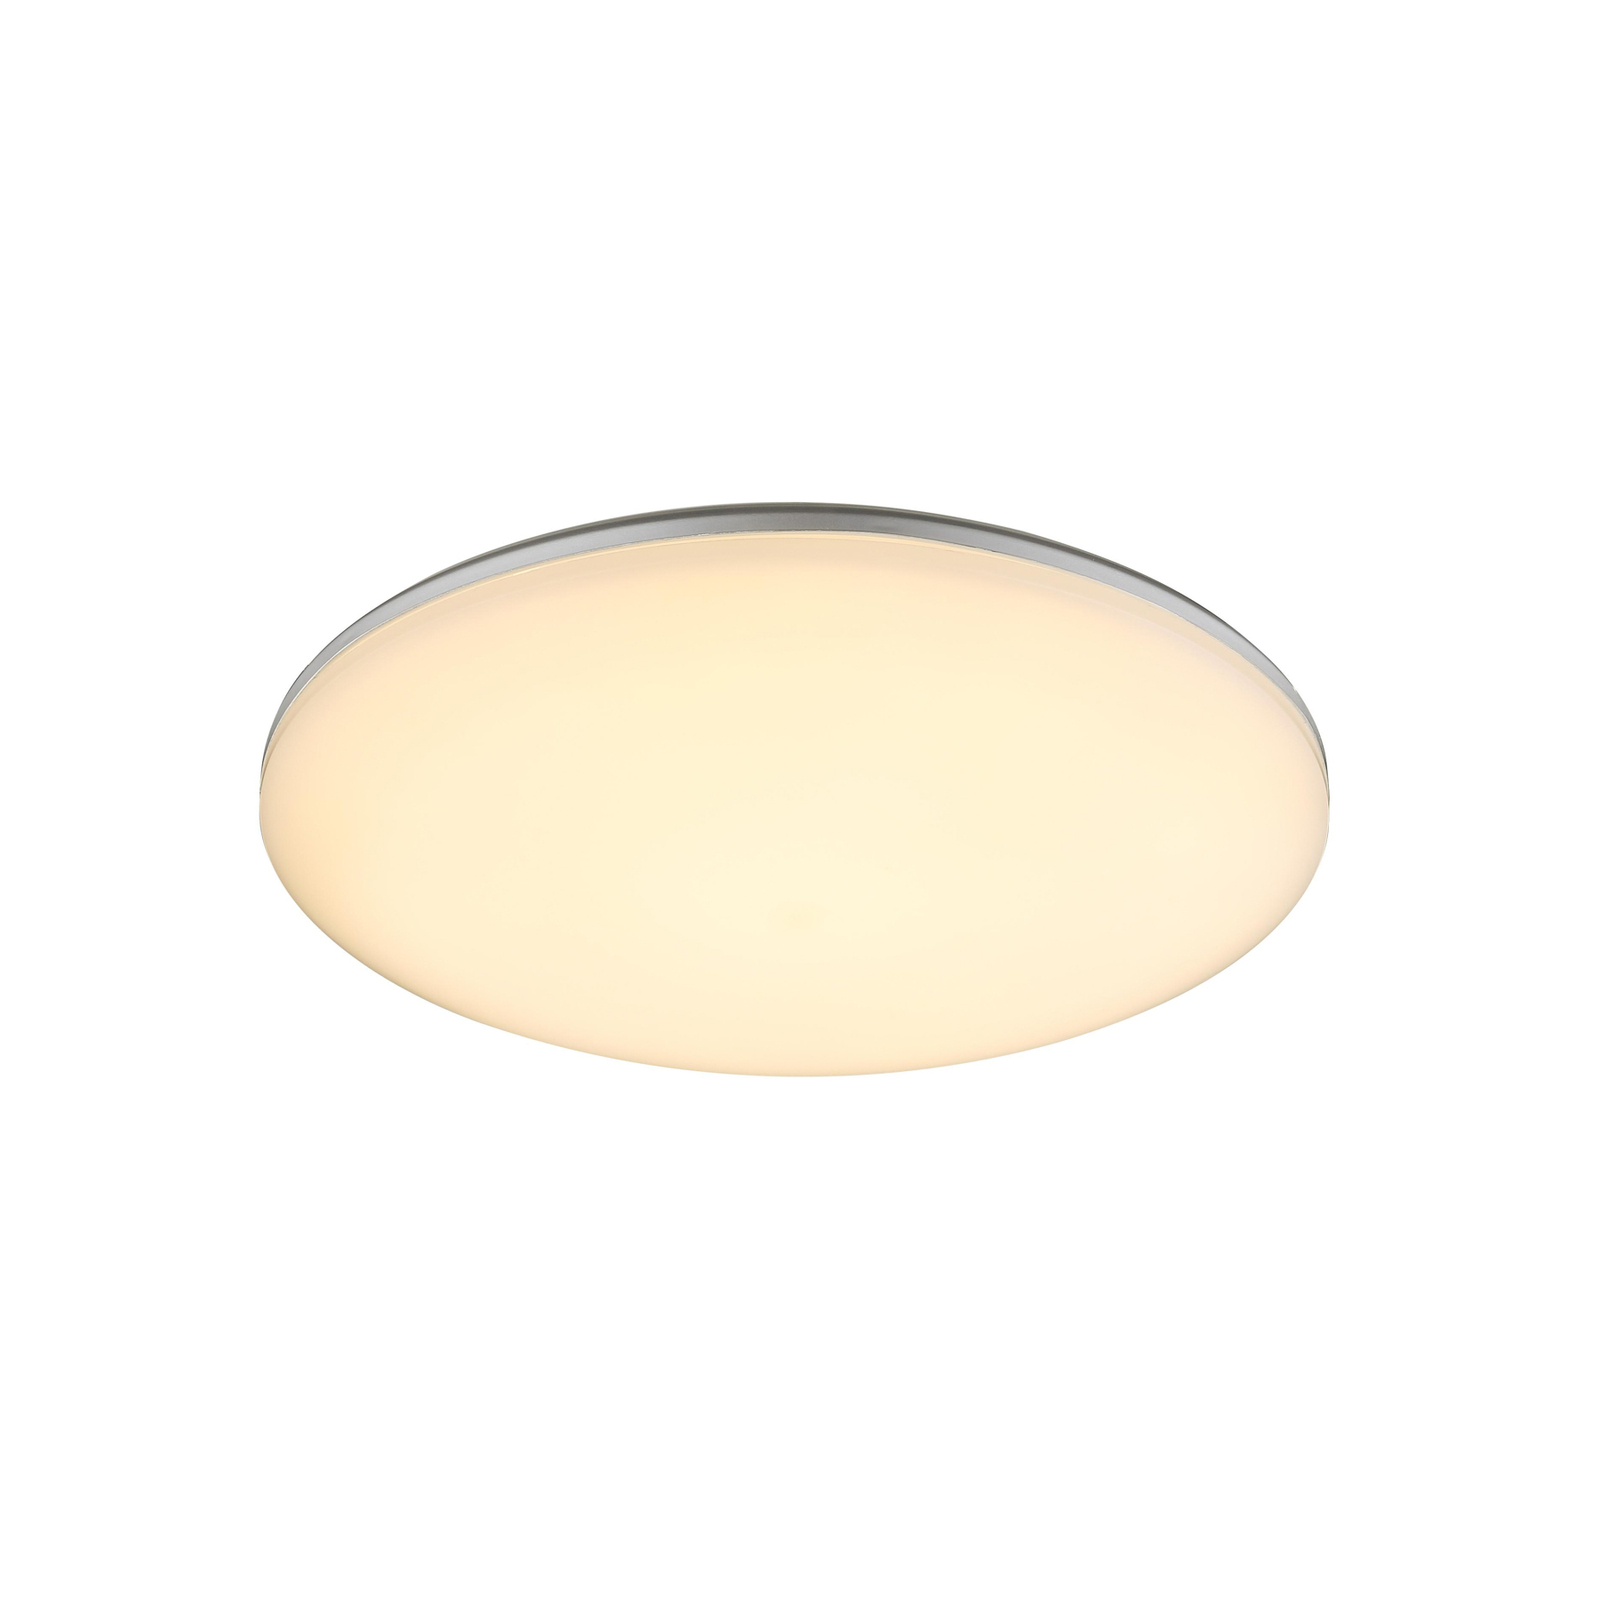 LED-Außen-Deckenlampe Dori, Ø 33 cm, weiß, Kunststoff, IP54